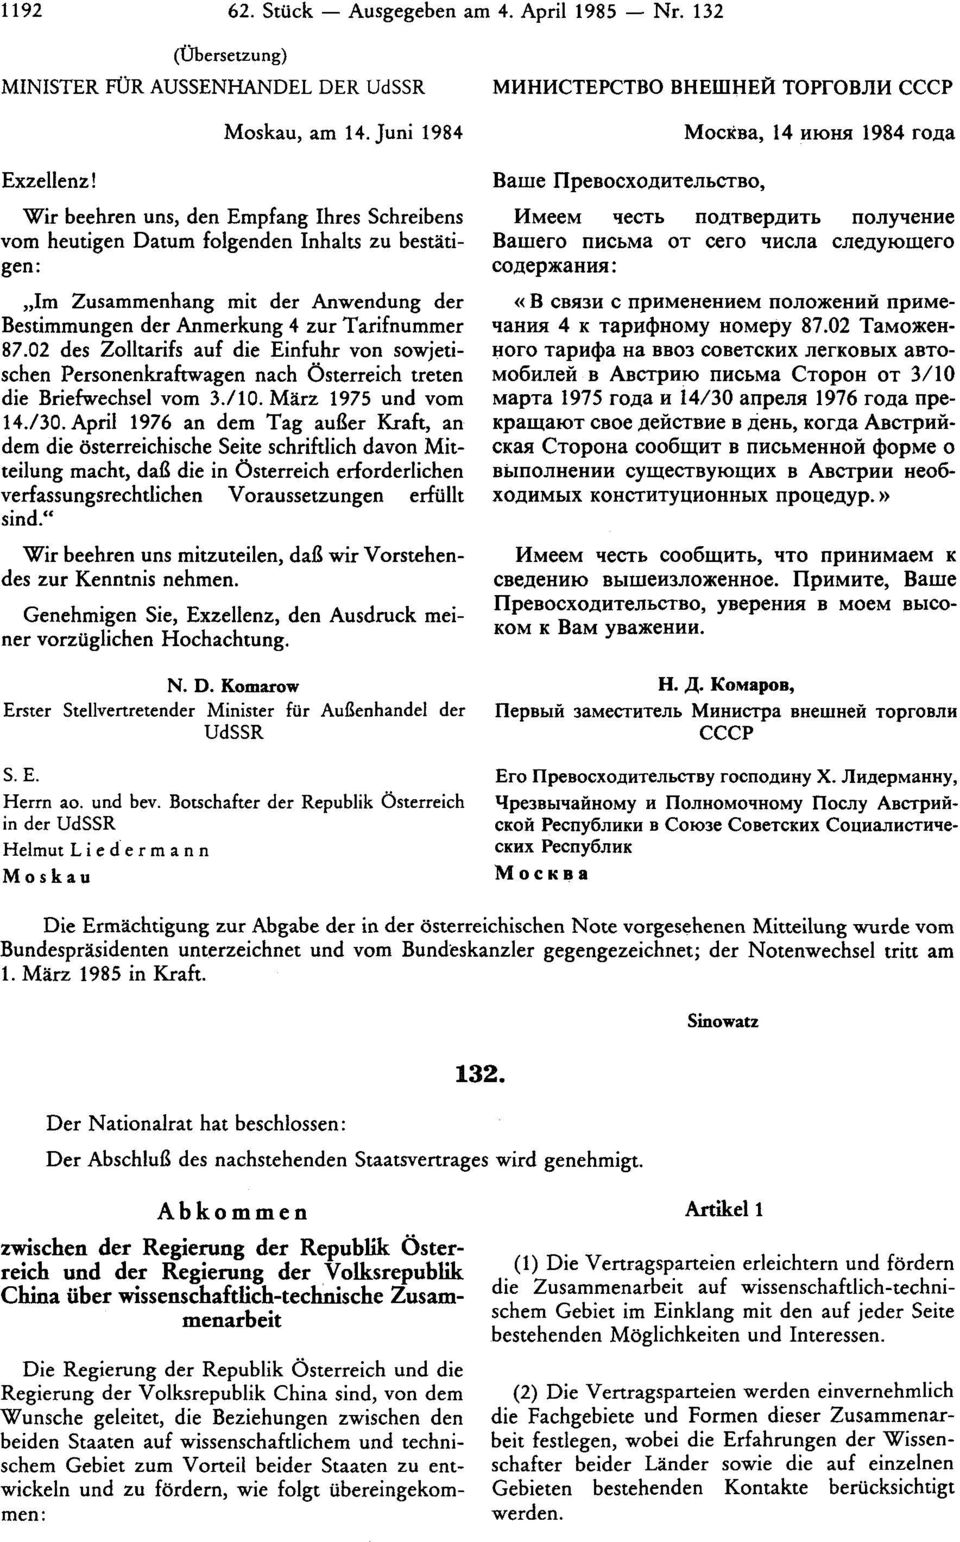 02 des Zolltarifs auf die Einfuhr von sowjetischen Personenkraftwagen nach Österreich treten die Briefwechsel vom 3./10. März 1975 und vom 14./30.